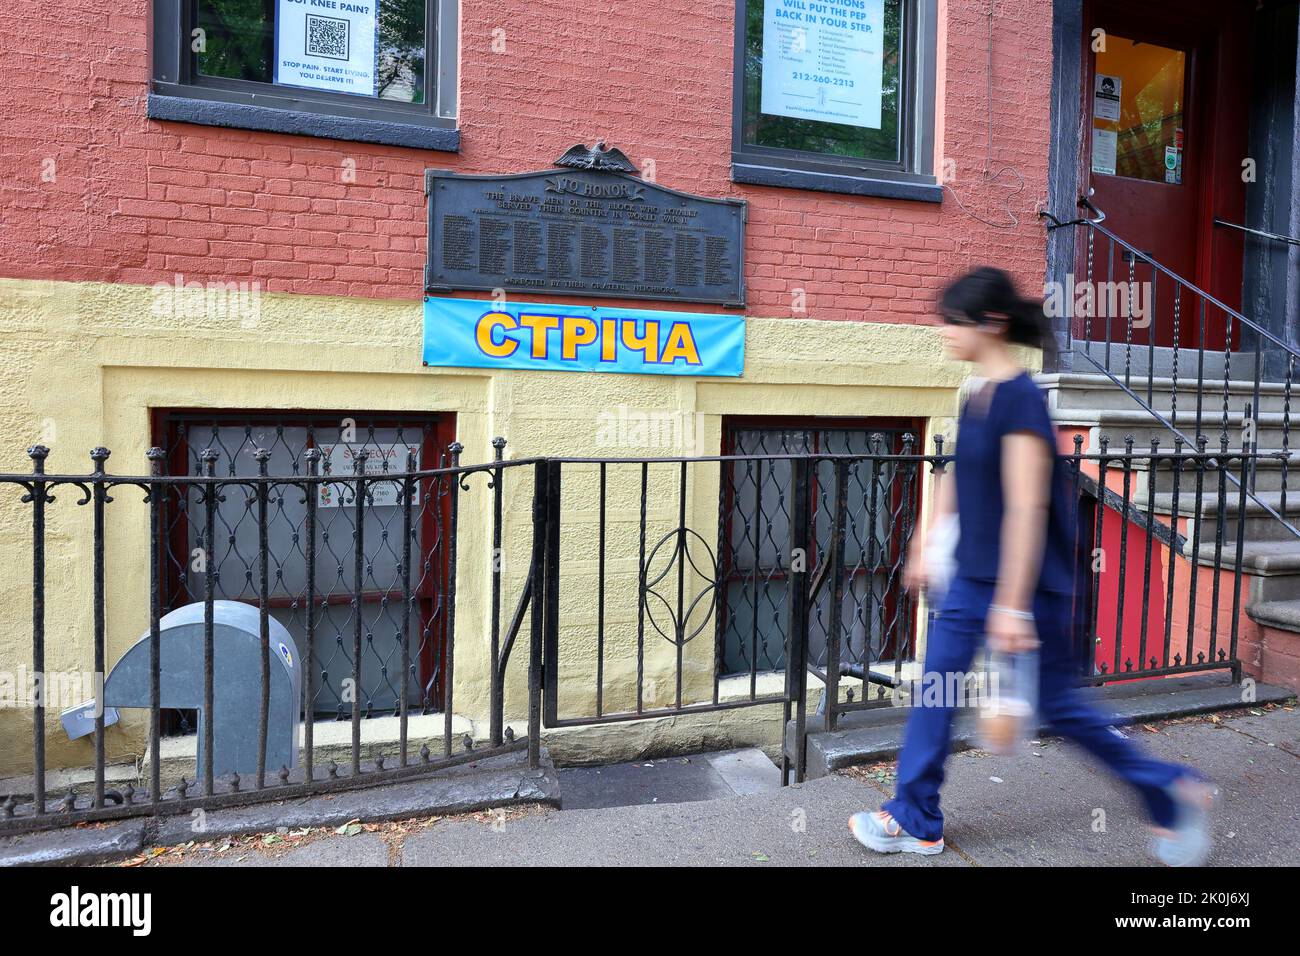 Streecha стріча, 33 E 7th St, New York, NYC photo d'un restaurant ukrainien dans le quartier East Village de Manhattan. Banque D'Images